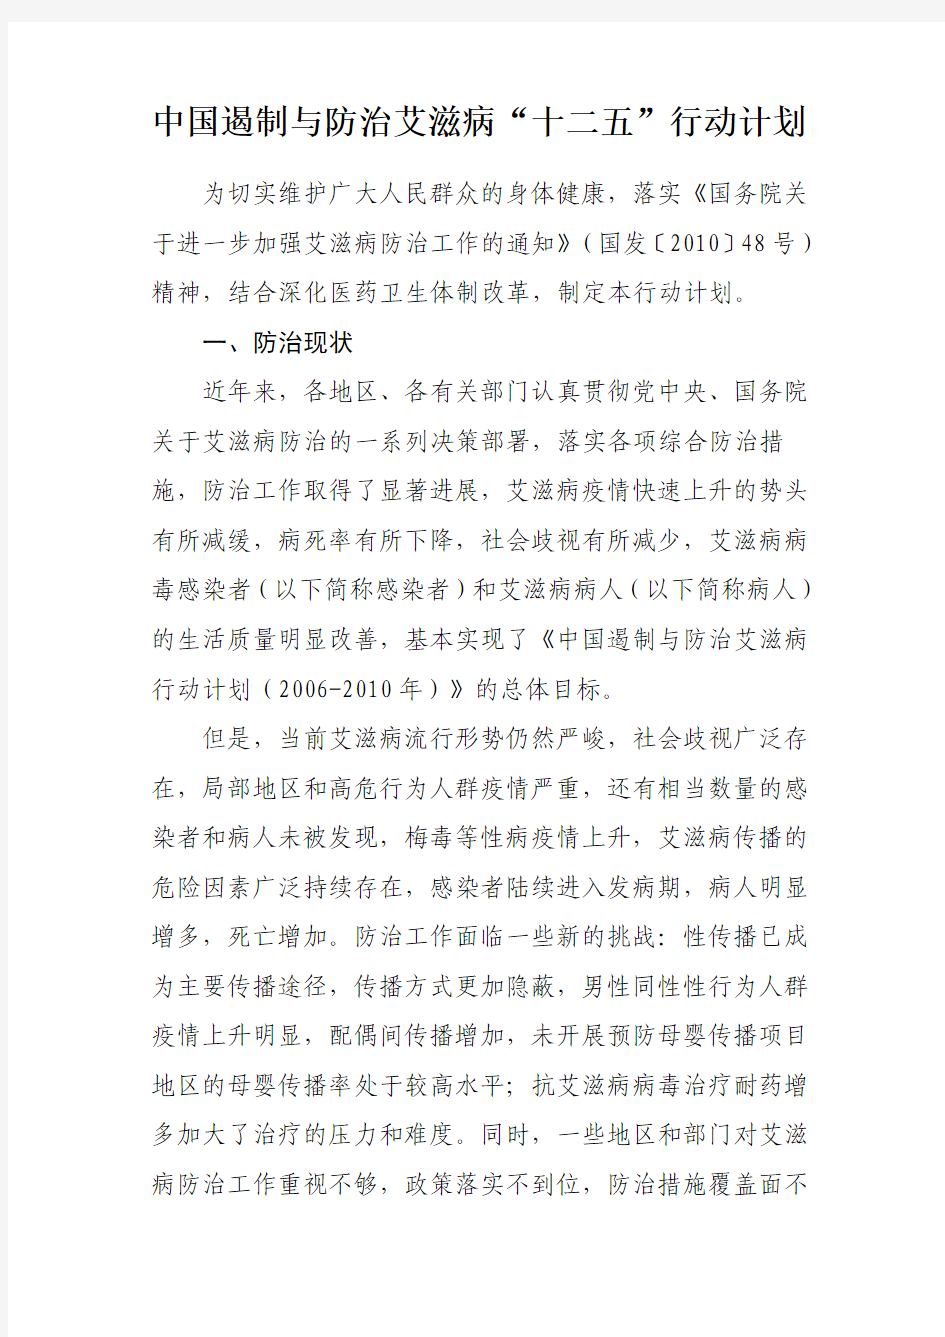 中国遏制与防治艾滋病“十二五”行动计划(2012年3月1日发布)